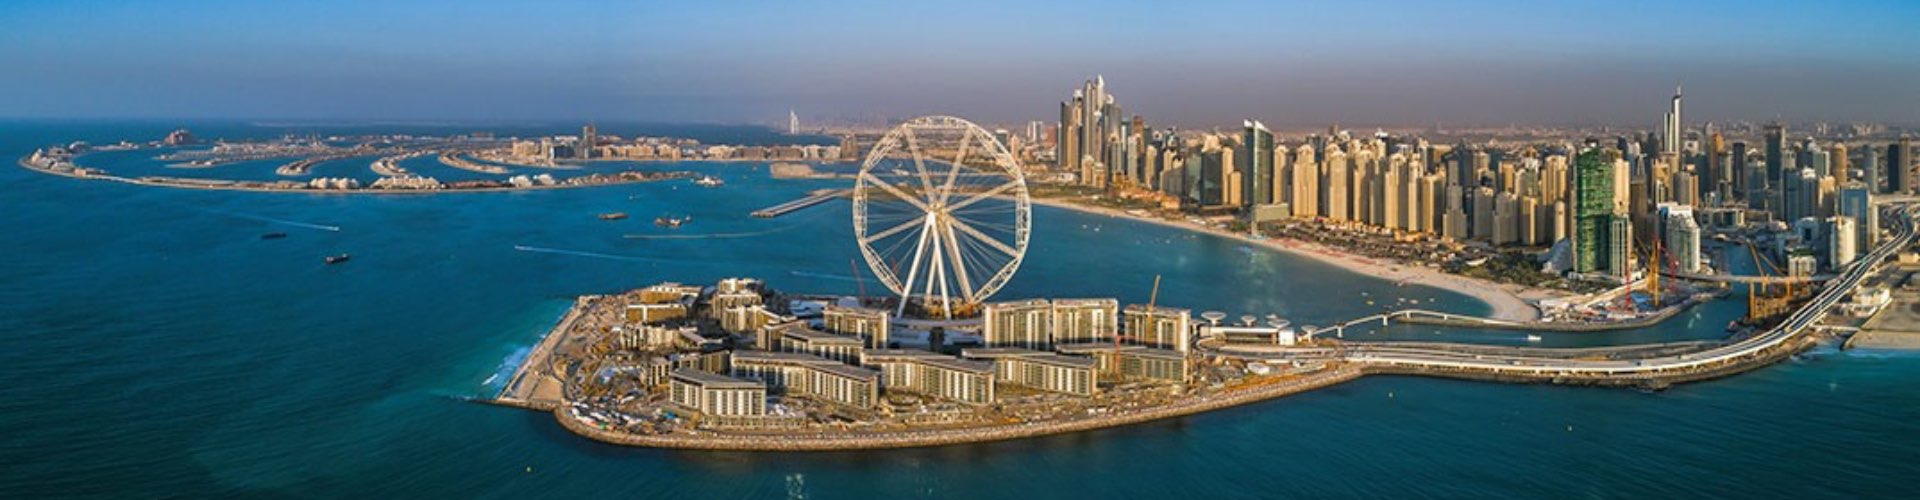 Meraas and Caesars Entertainment Plan to Bring Caesars Palace to Dubai